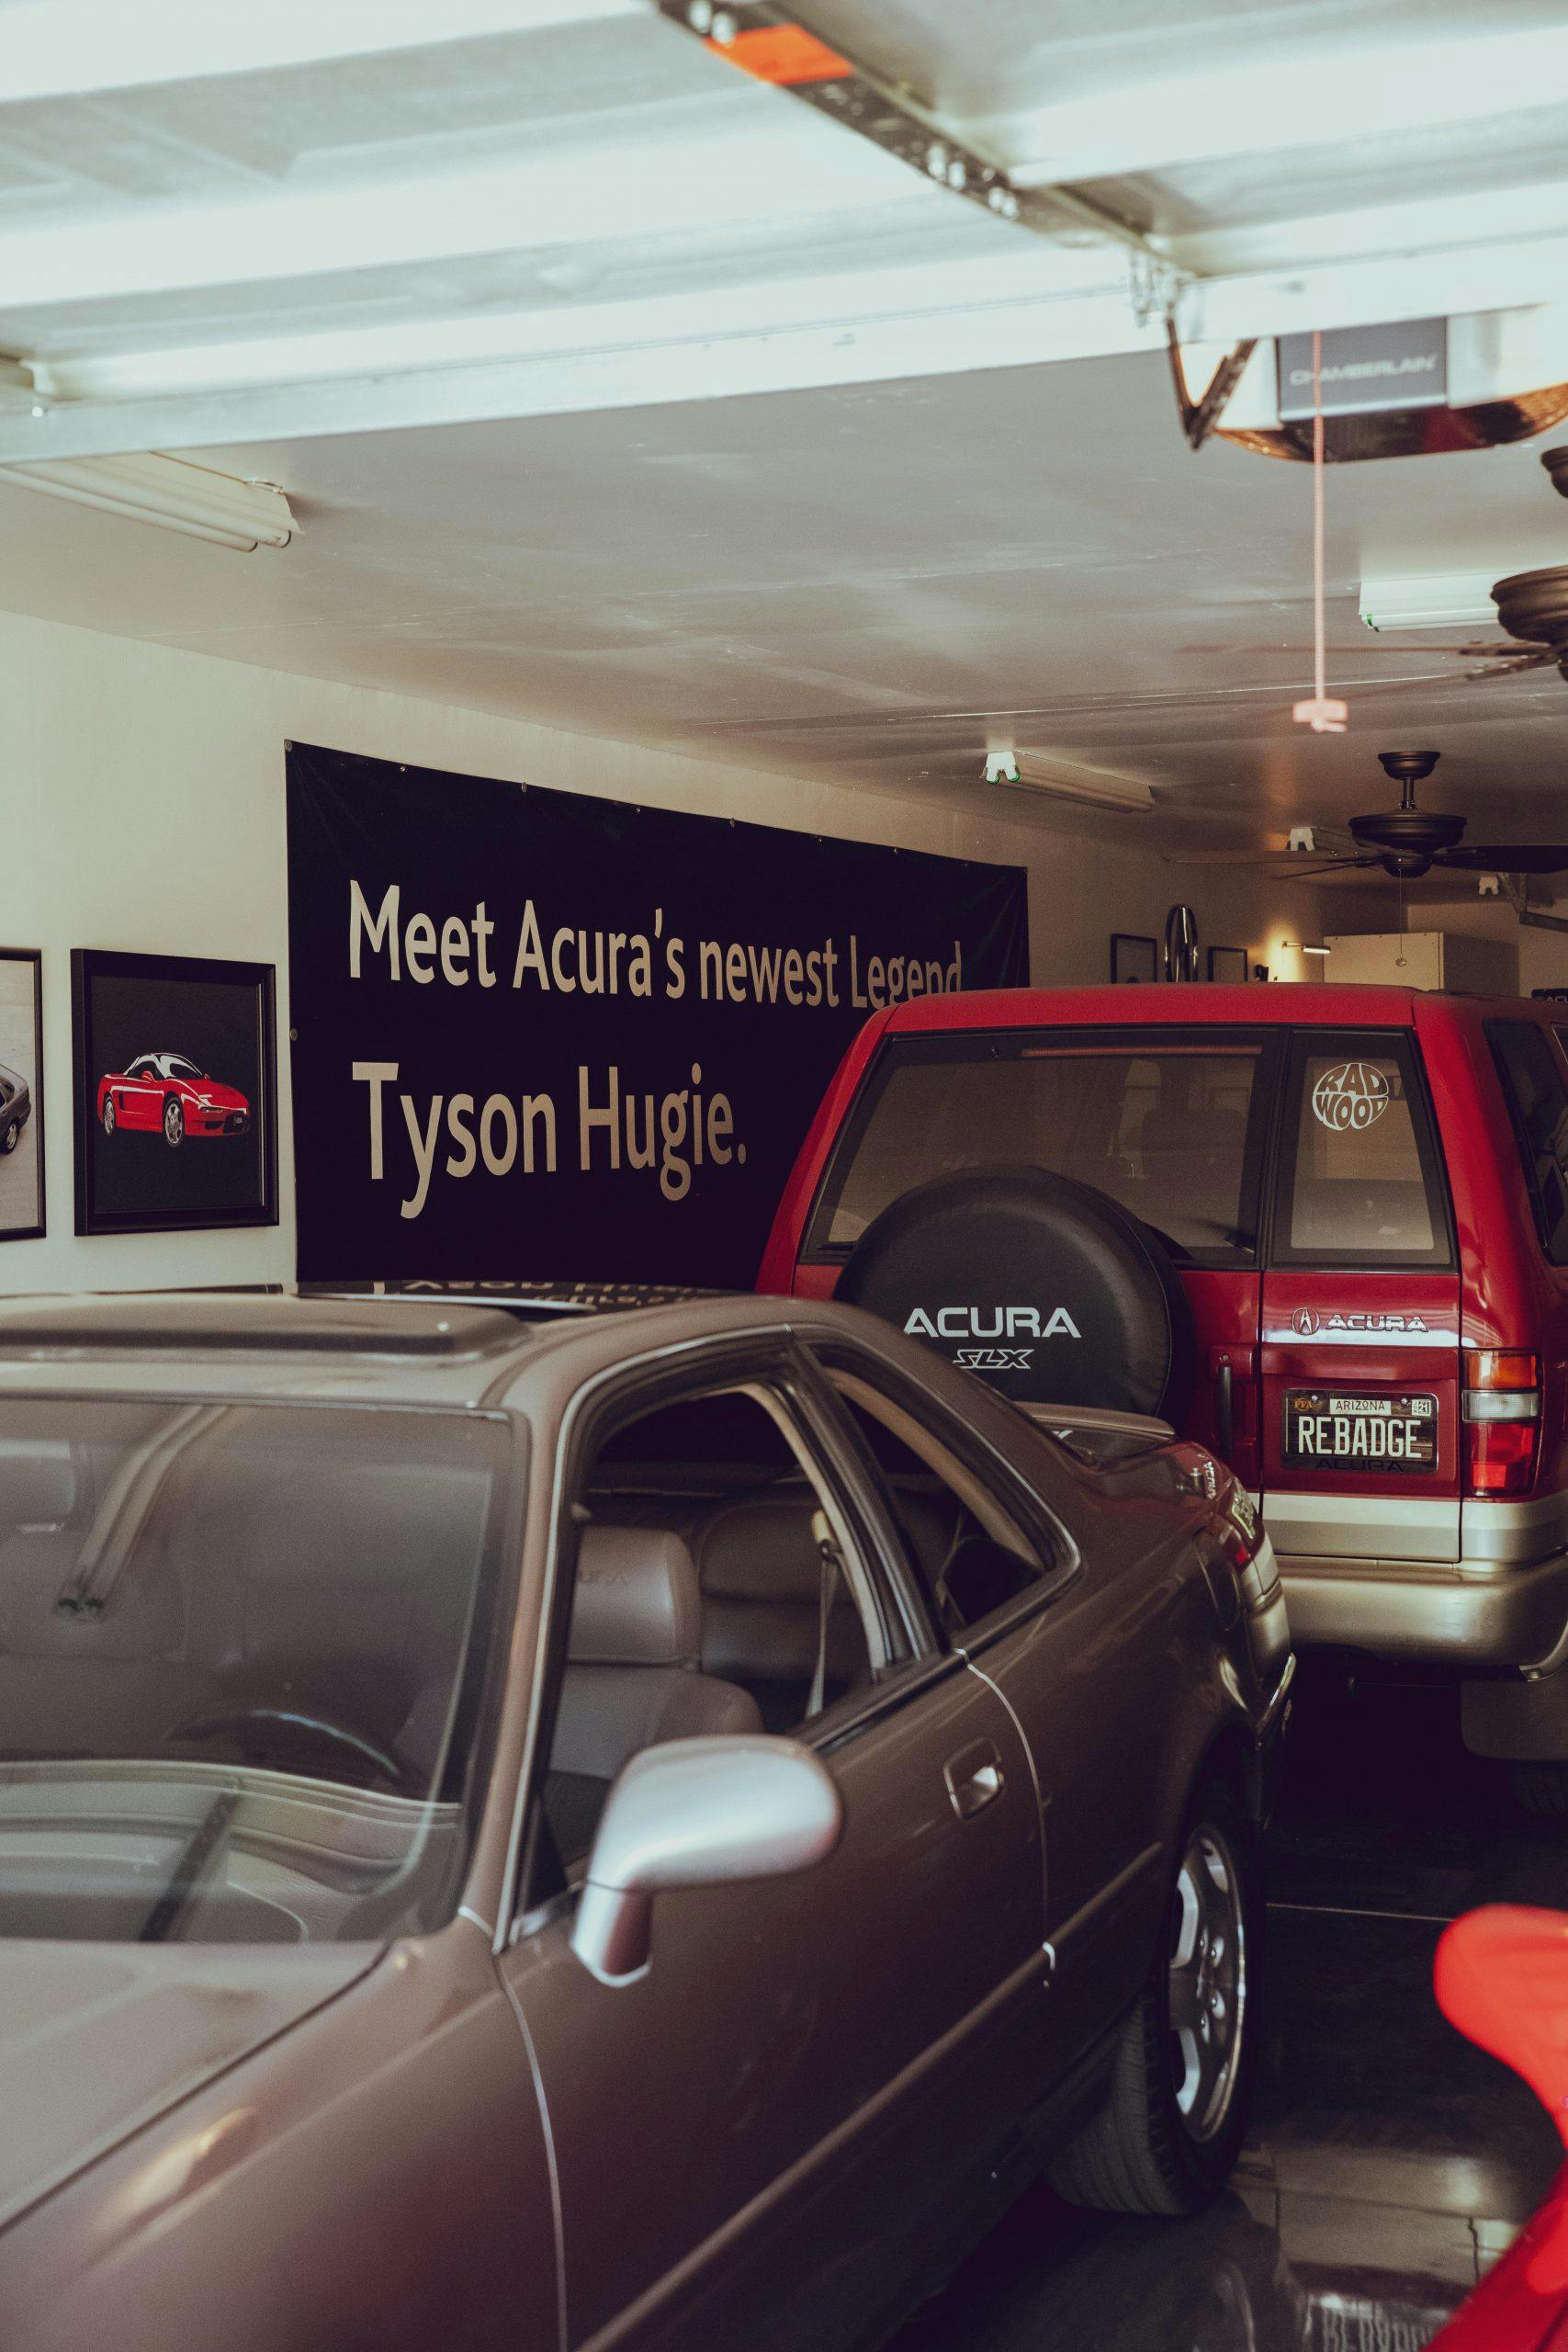 Tyson Hugie’s 1992 Acura NSX